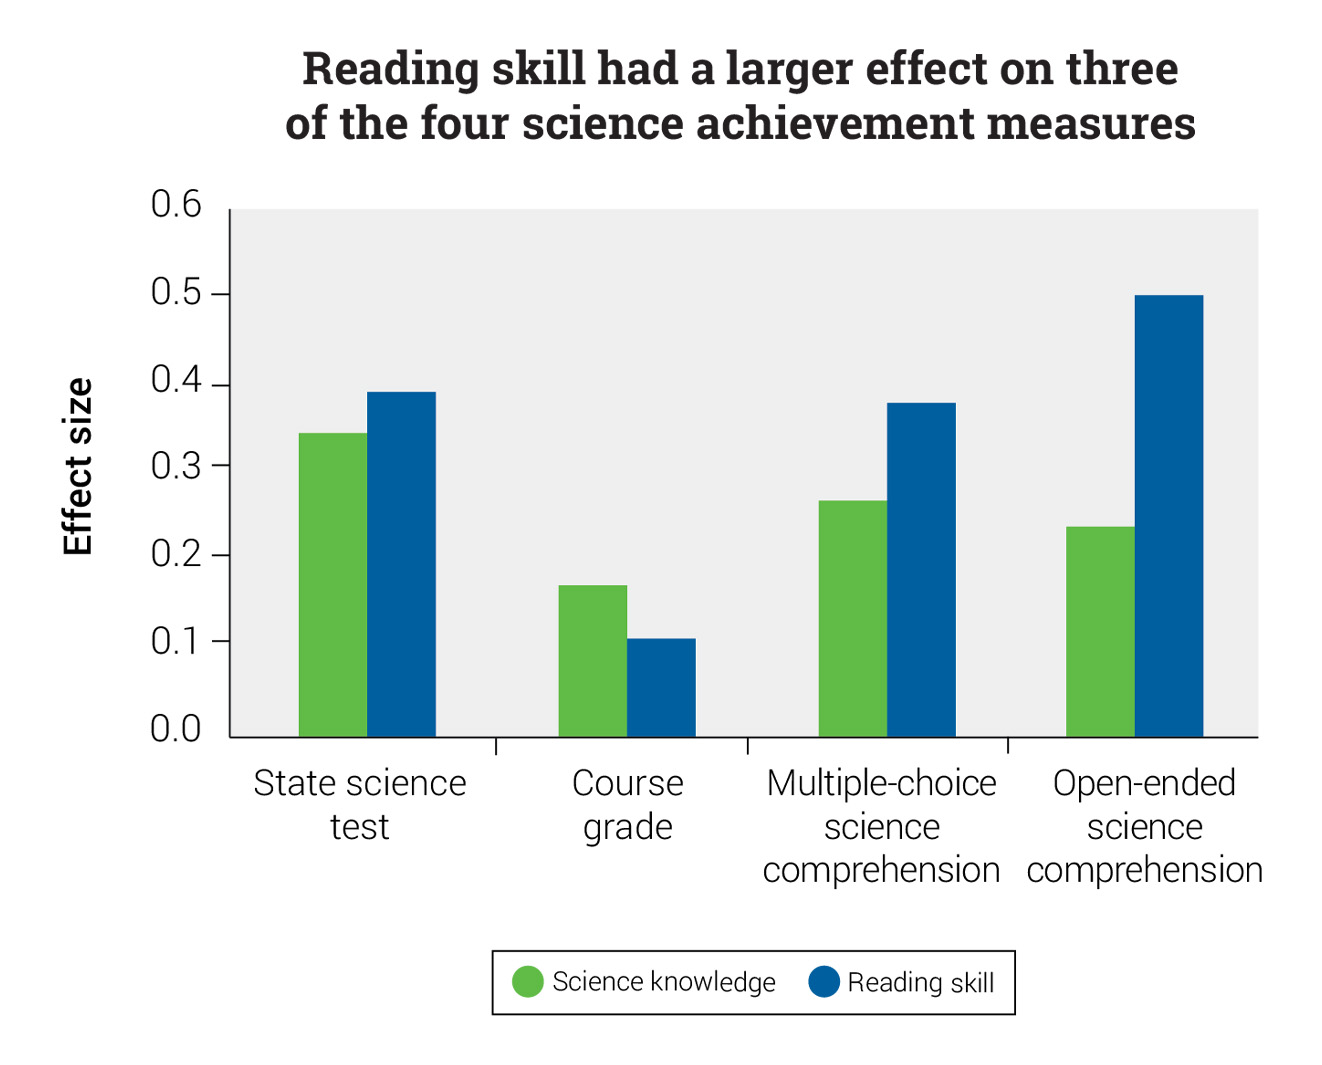 Reading Skill vs. Science Knowledge